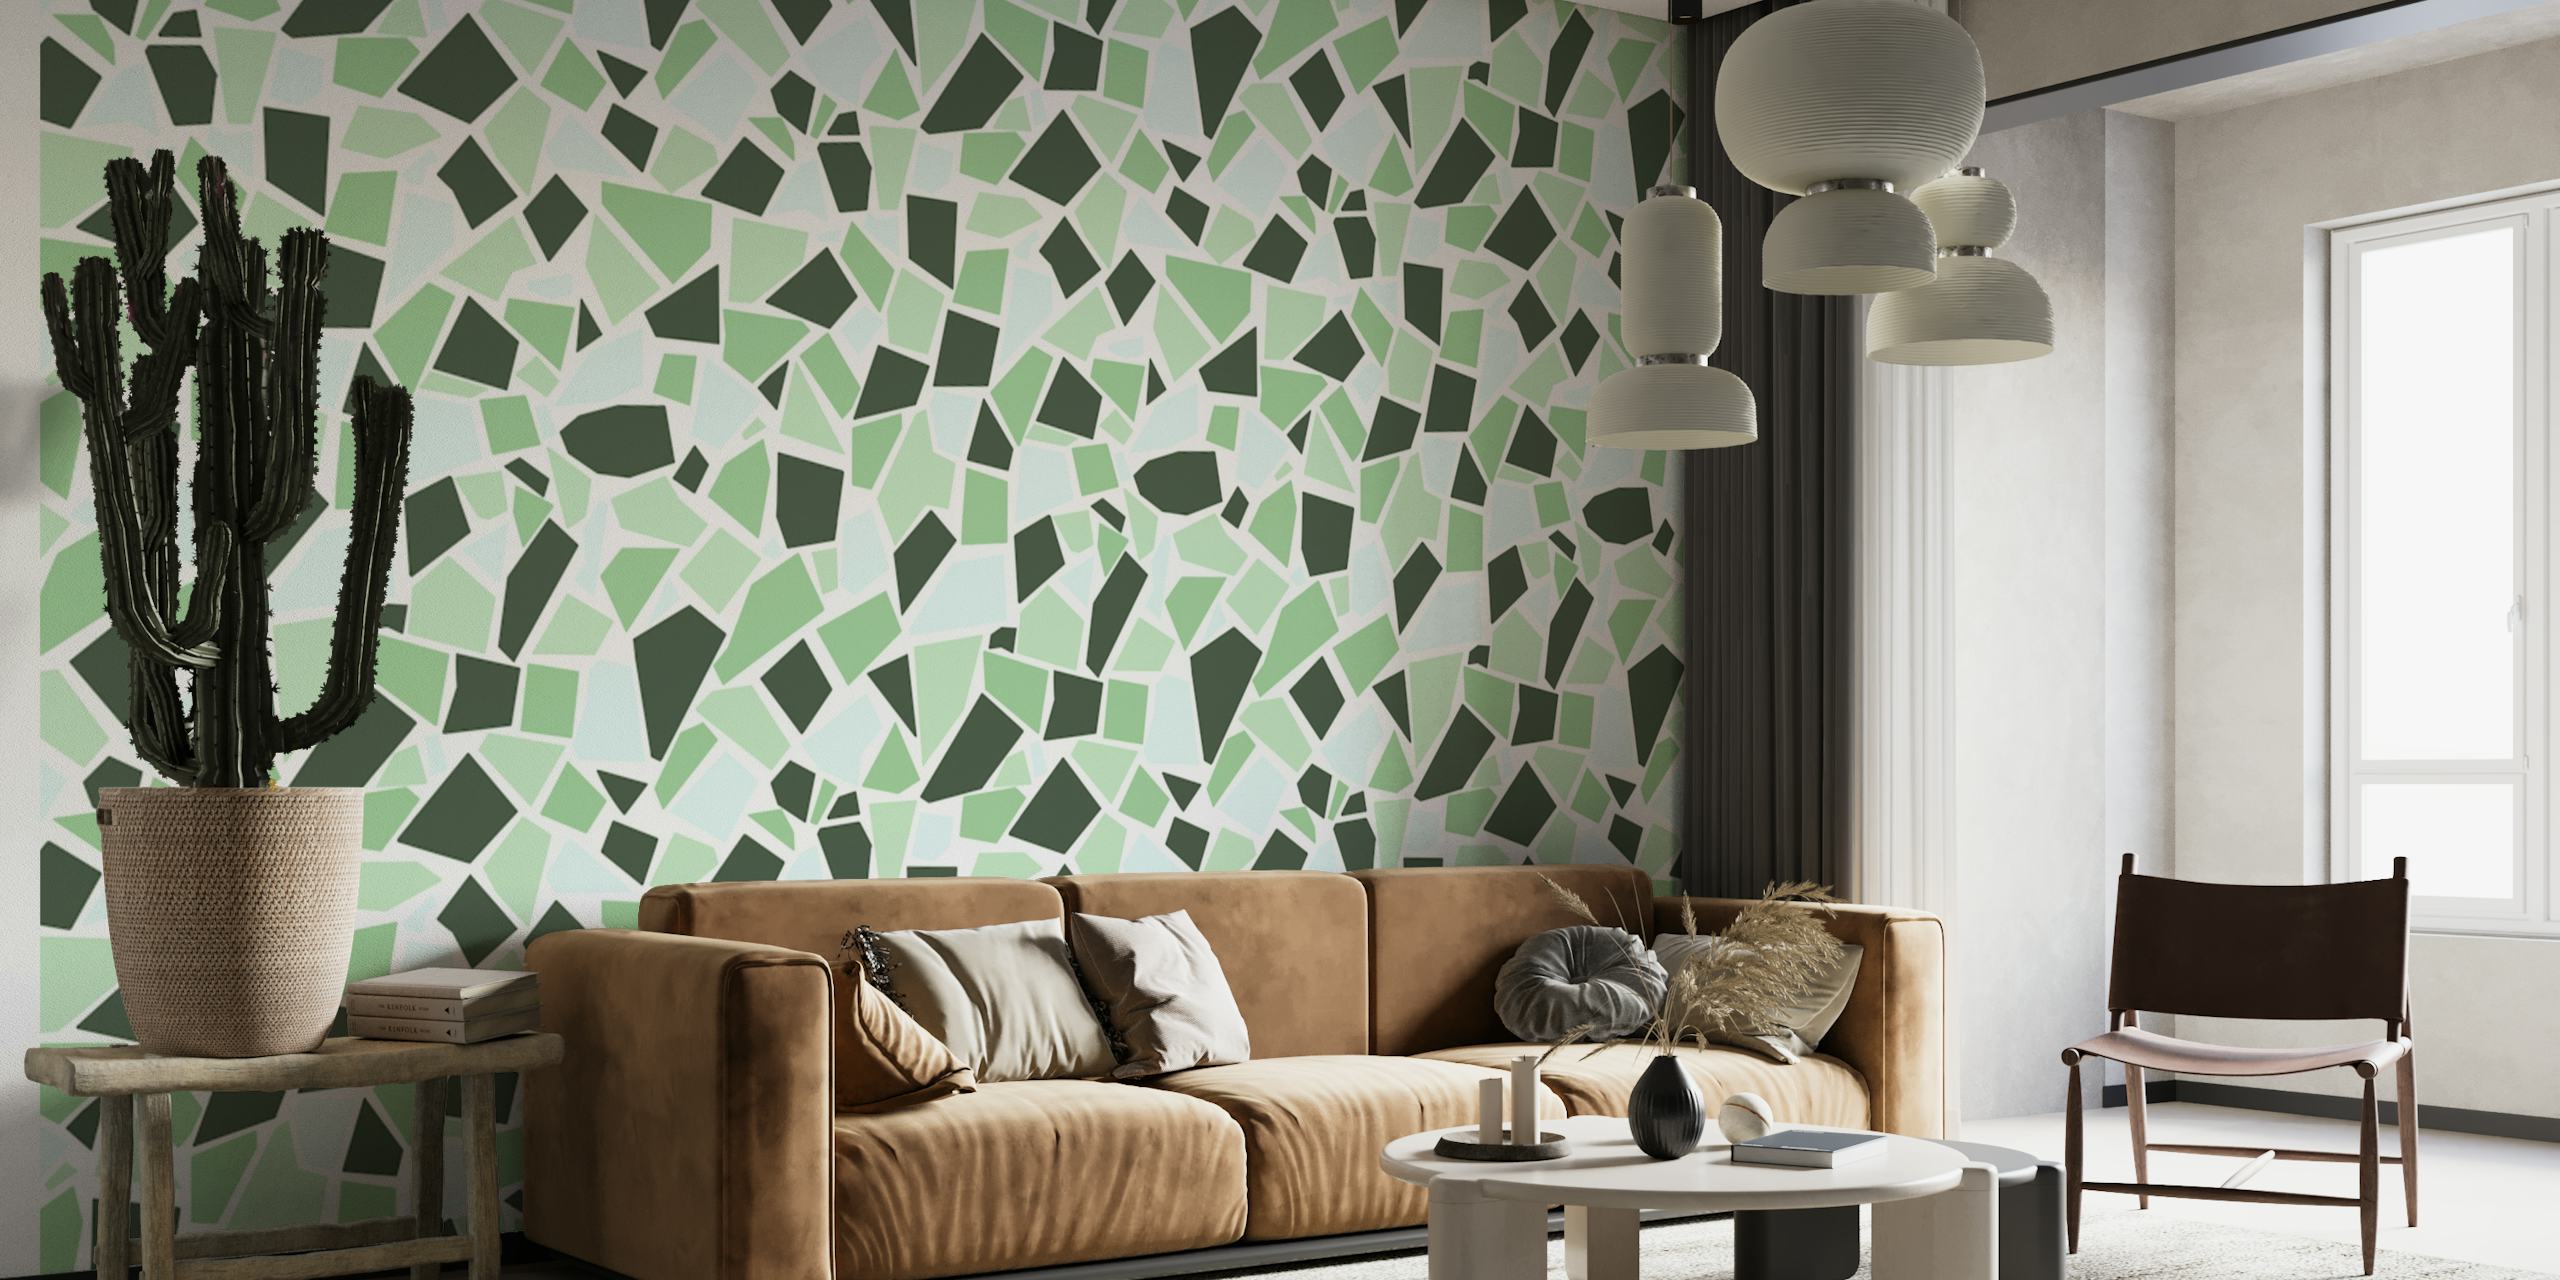 Mosaic art 1 green wallpaper